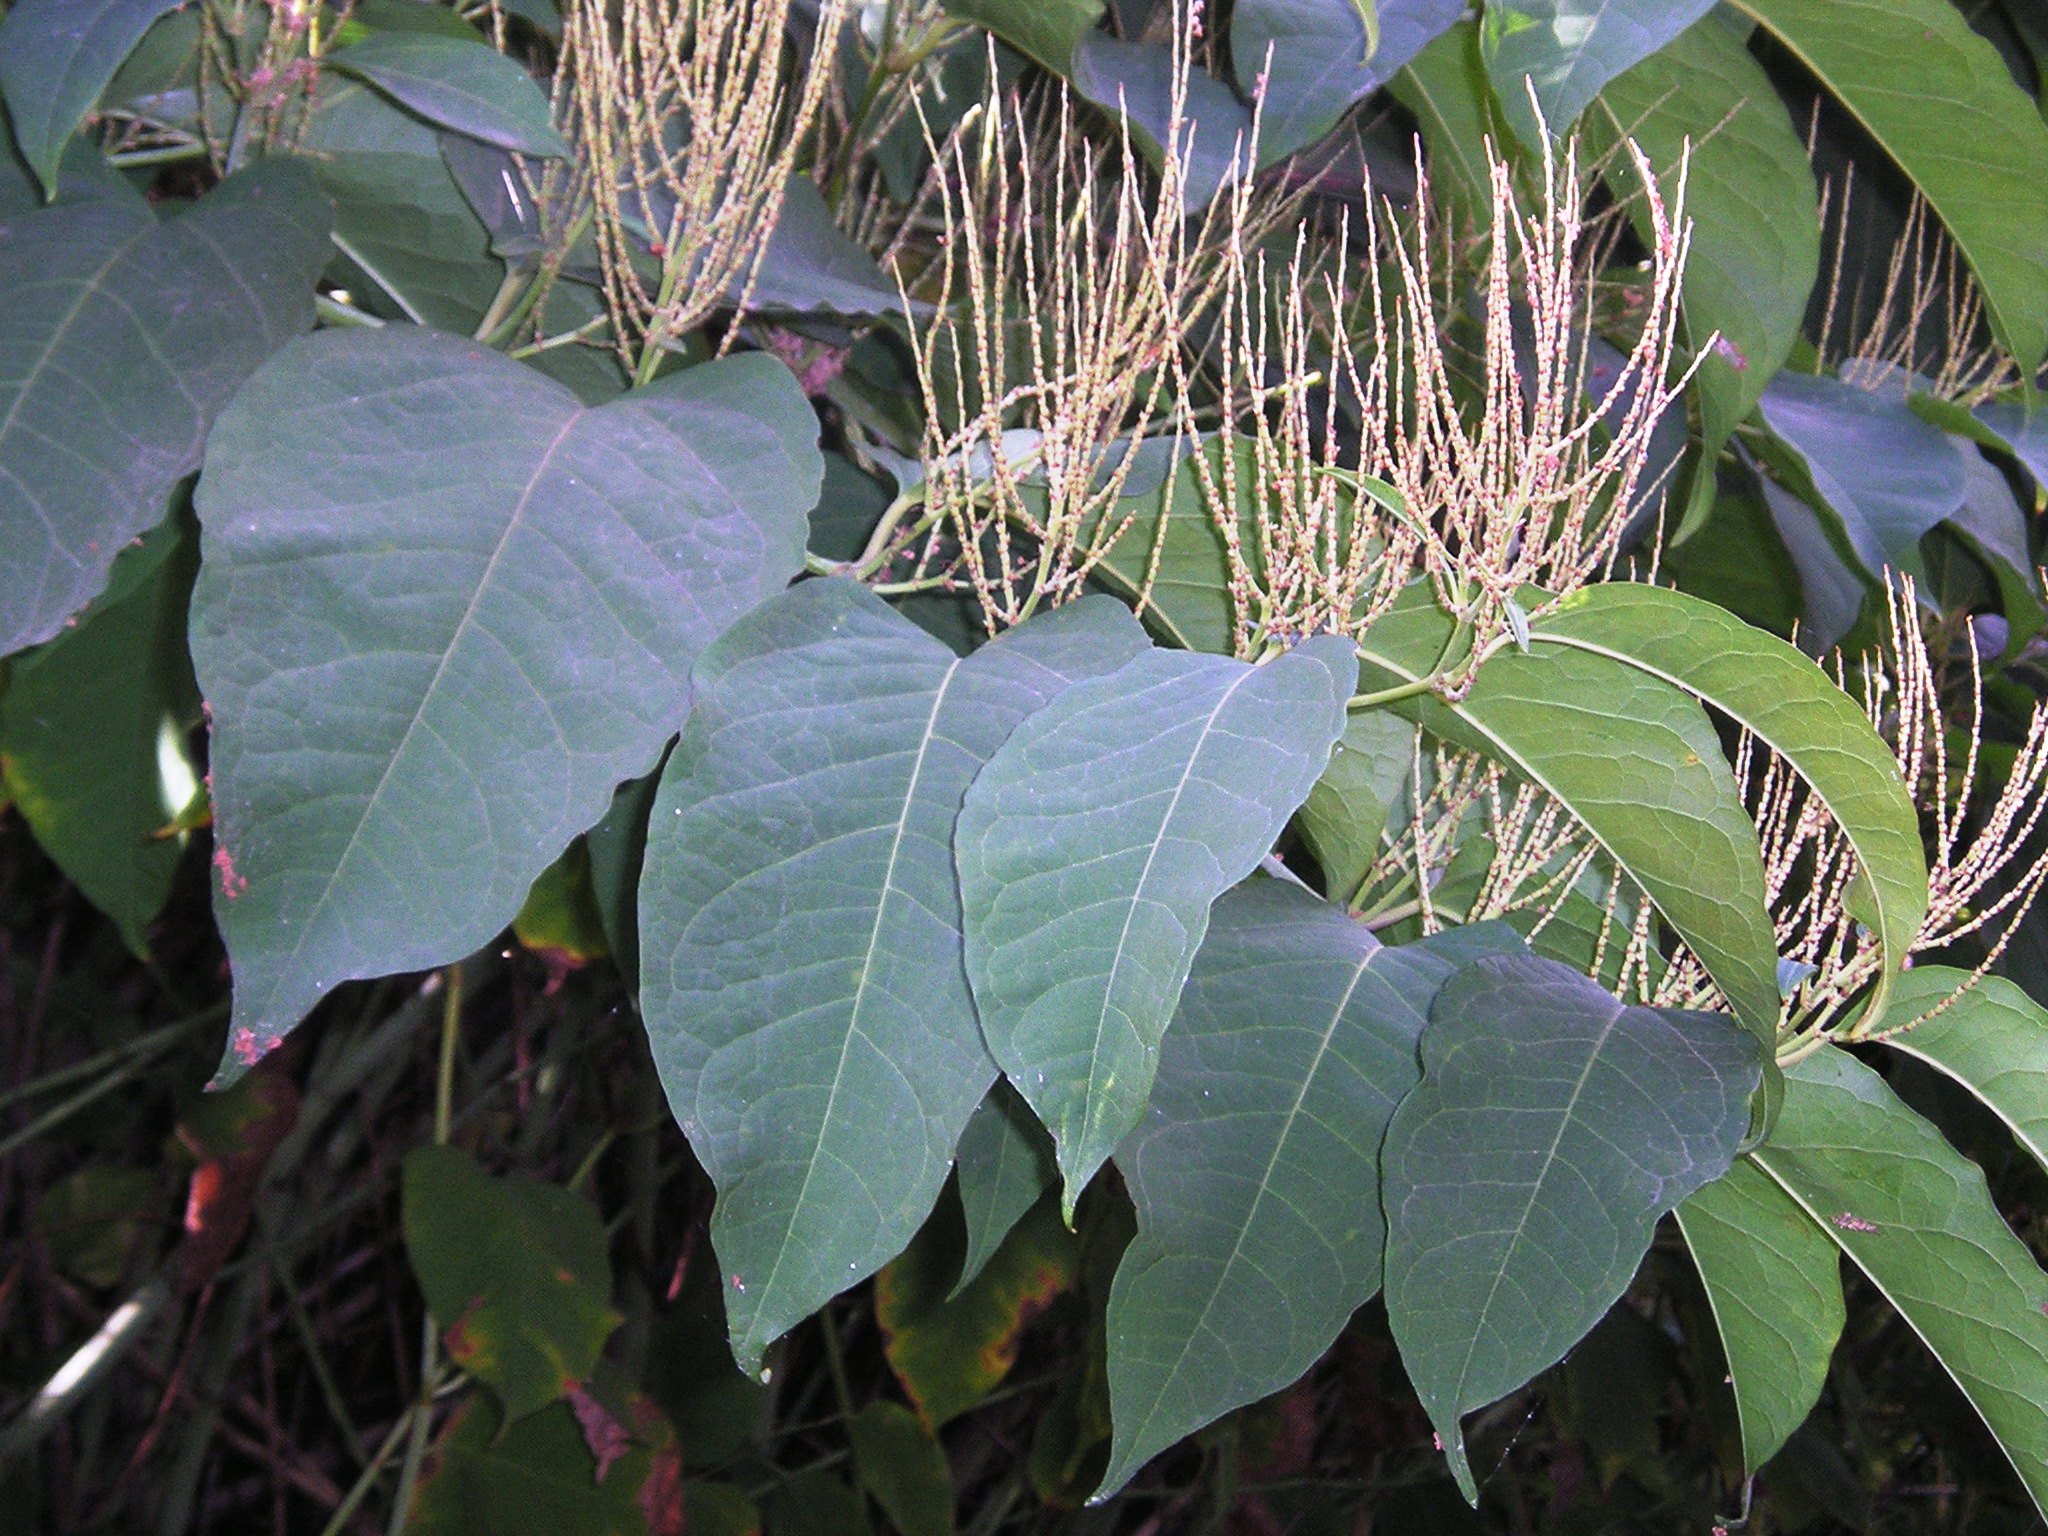 Bohemian knotweed leaves